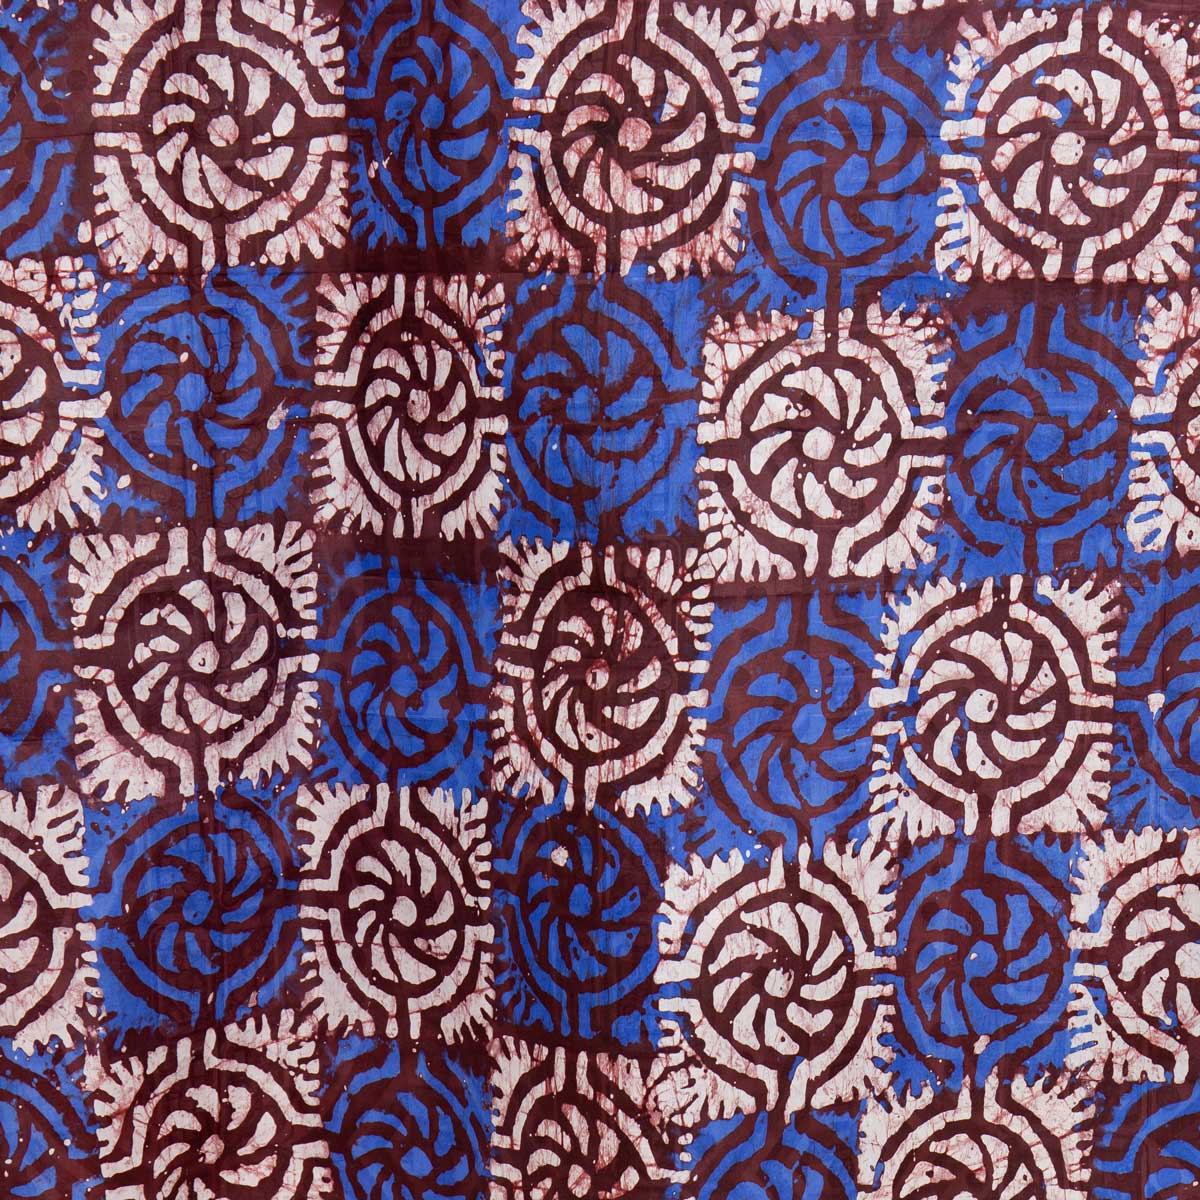 TILE BATIK Cloth 85x280 cm, blue/wine